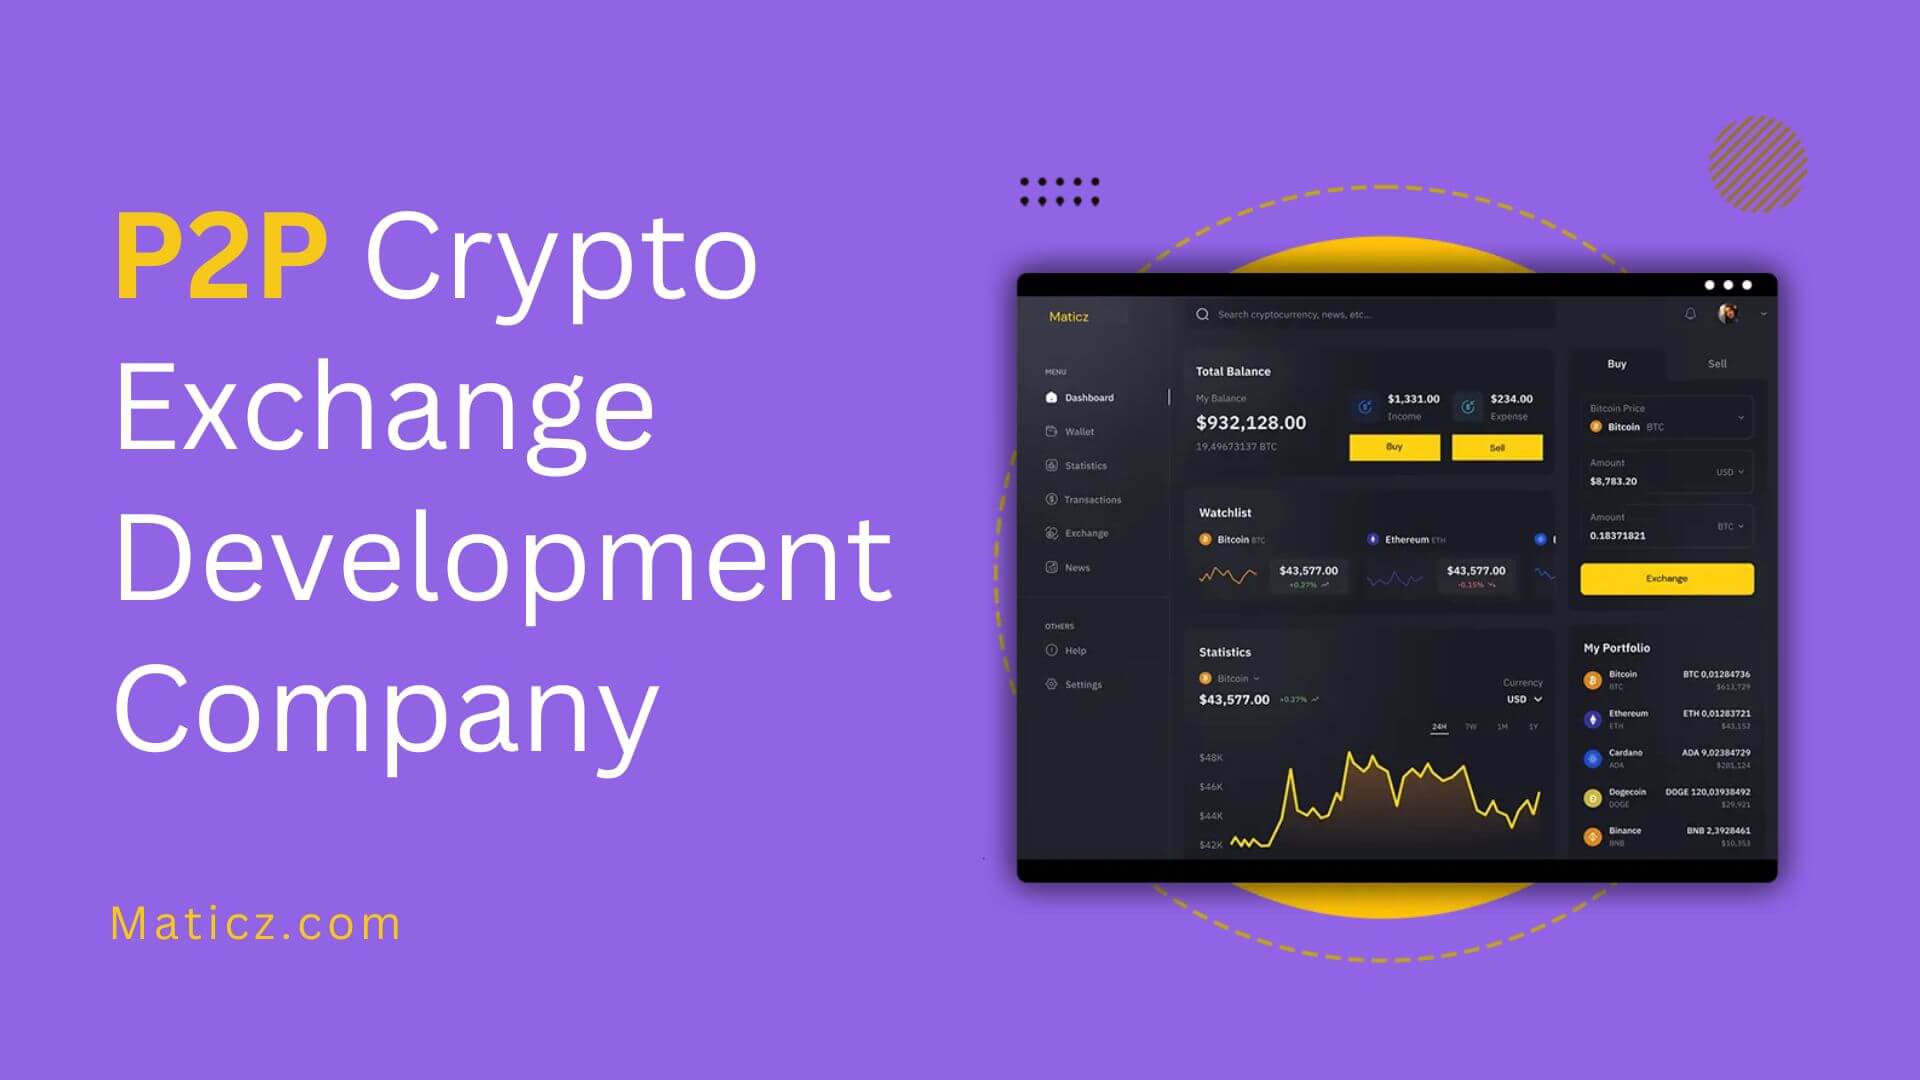 P2P Crypto Exchange Software Development Company